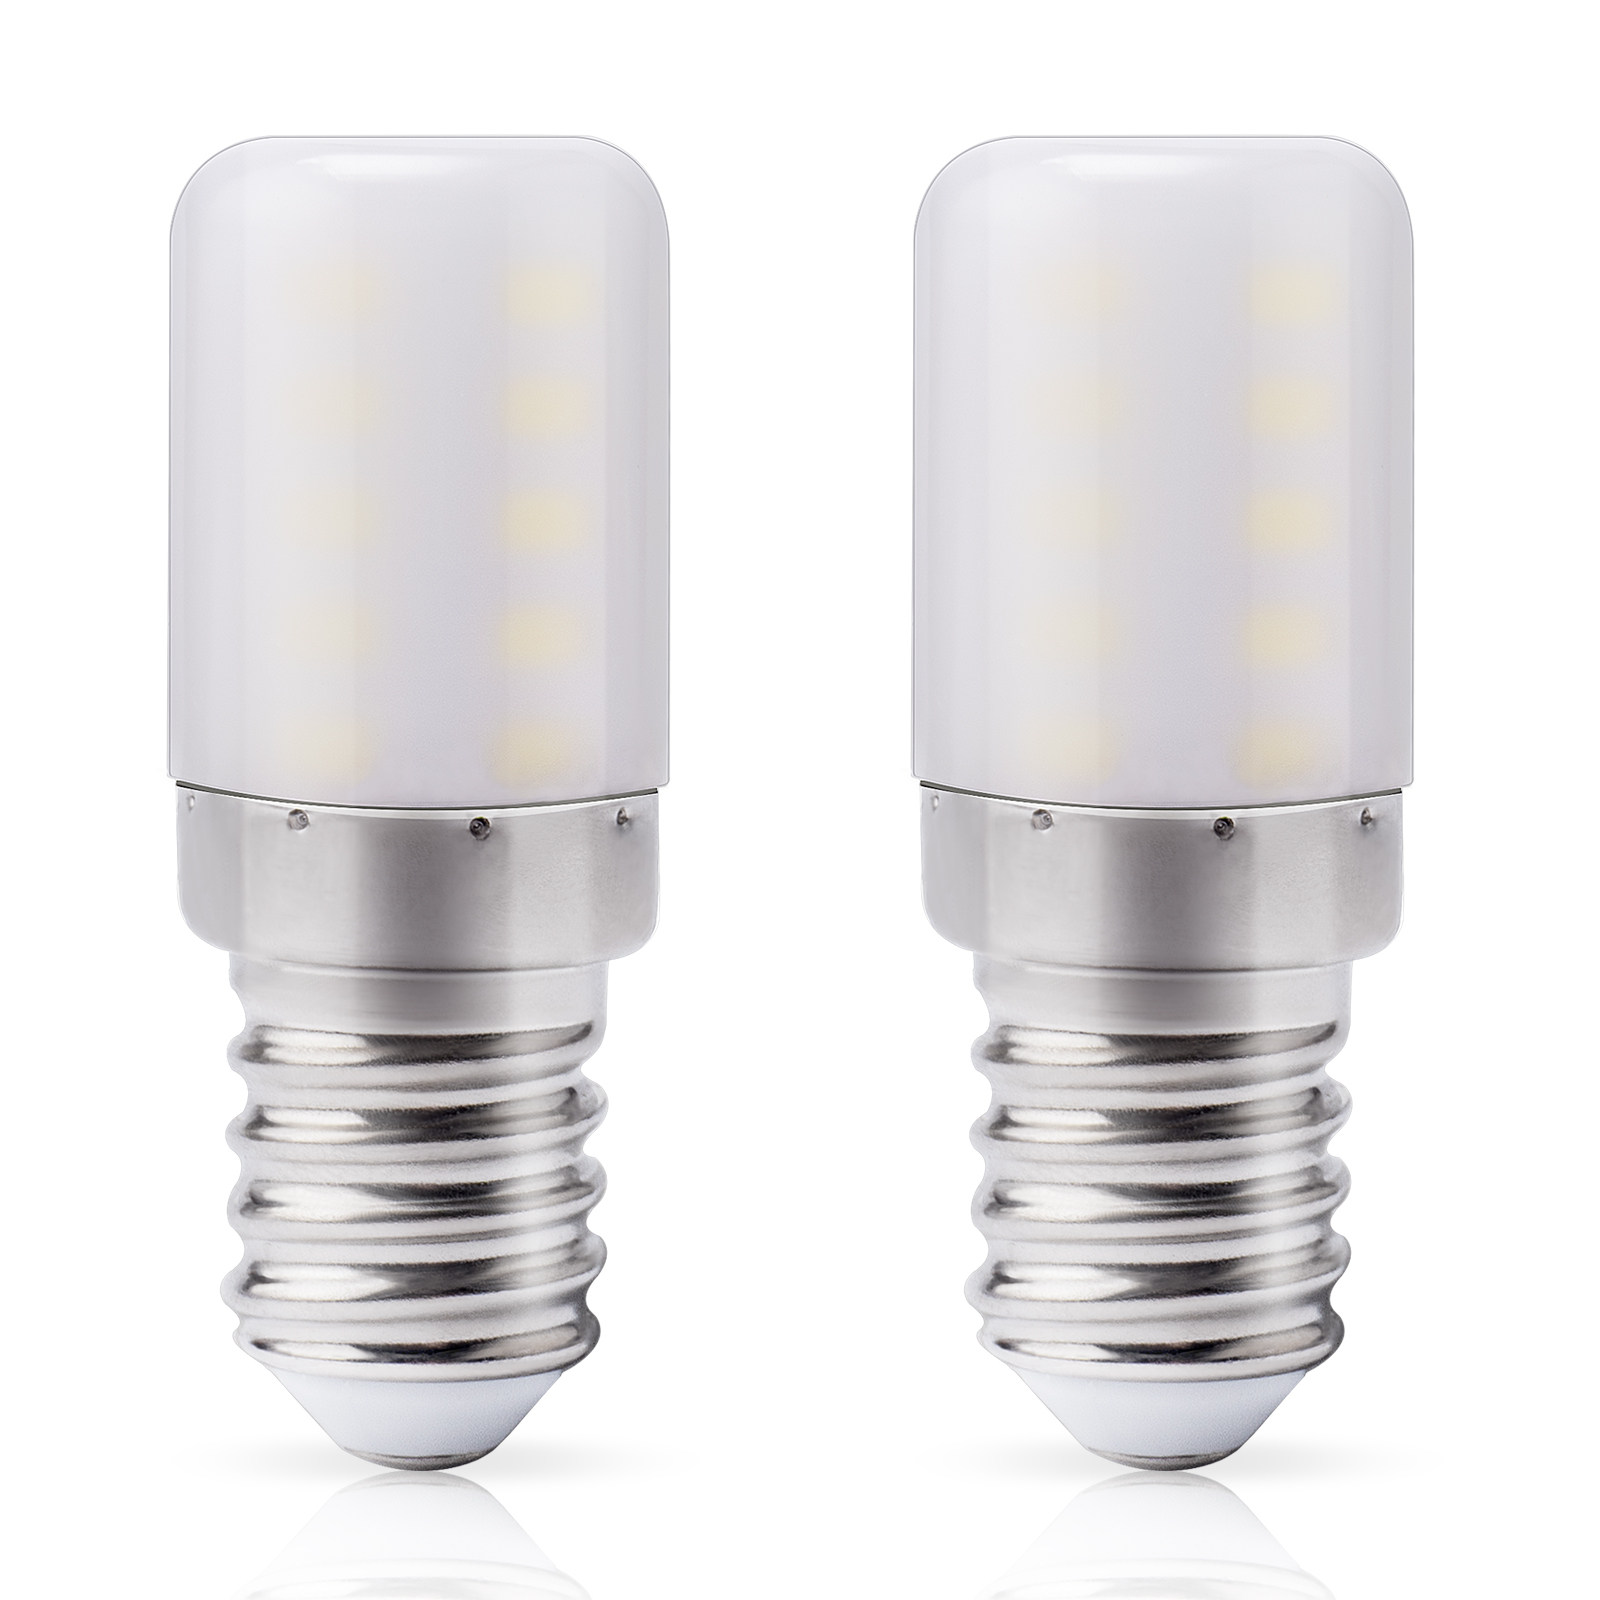 DiCUNO Ampoule LED réfrigérateur E14, Blanc froid 6000K, 3W remplace l' ampoule halogène 30W pour réfrigérateur, 300lm, Petit culot à vis lampe LED  pour frigo, hotte, machine à coudre, 2 Unité : 